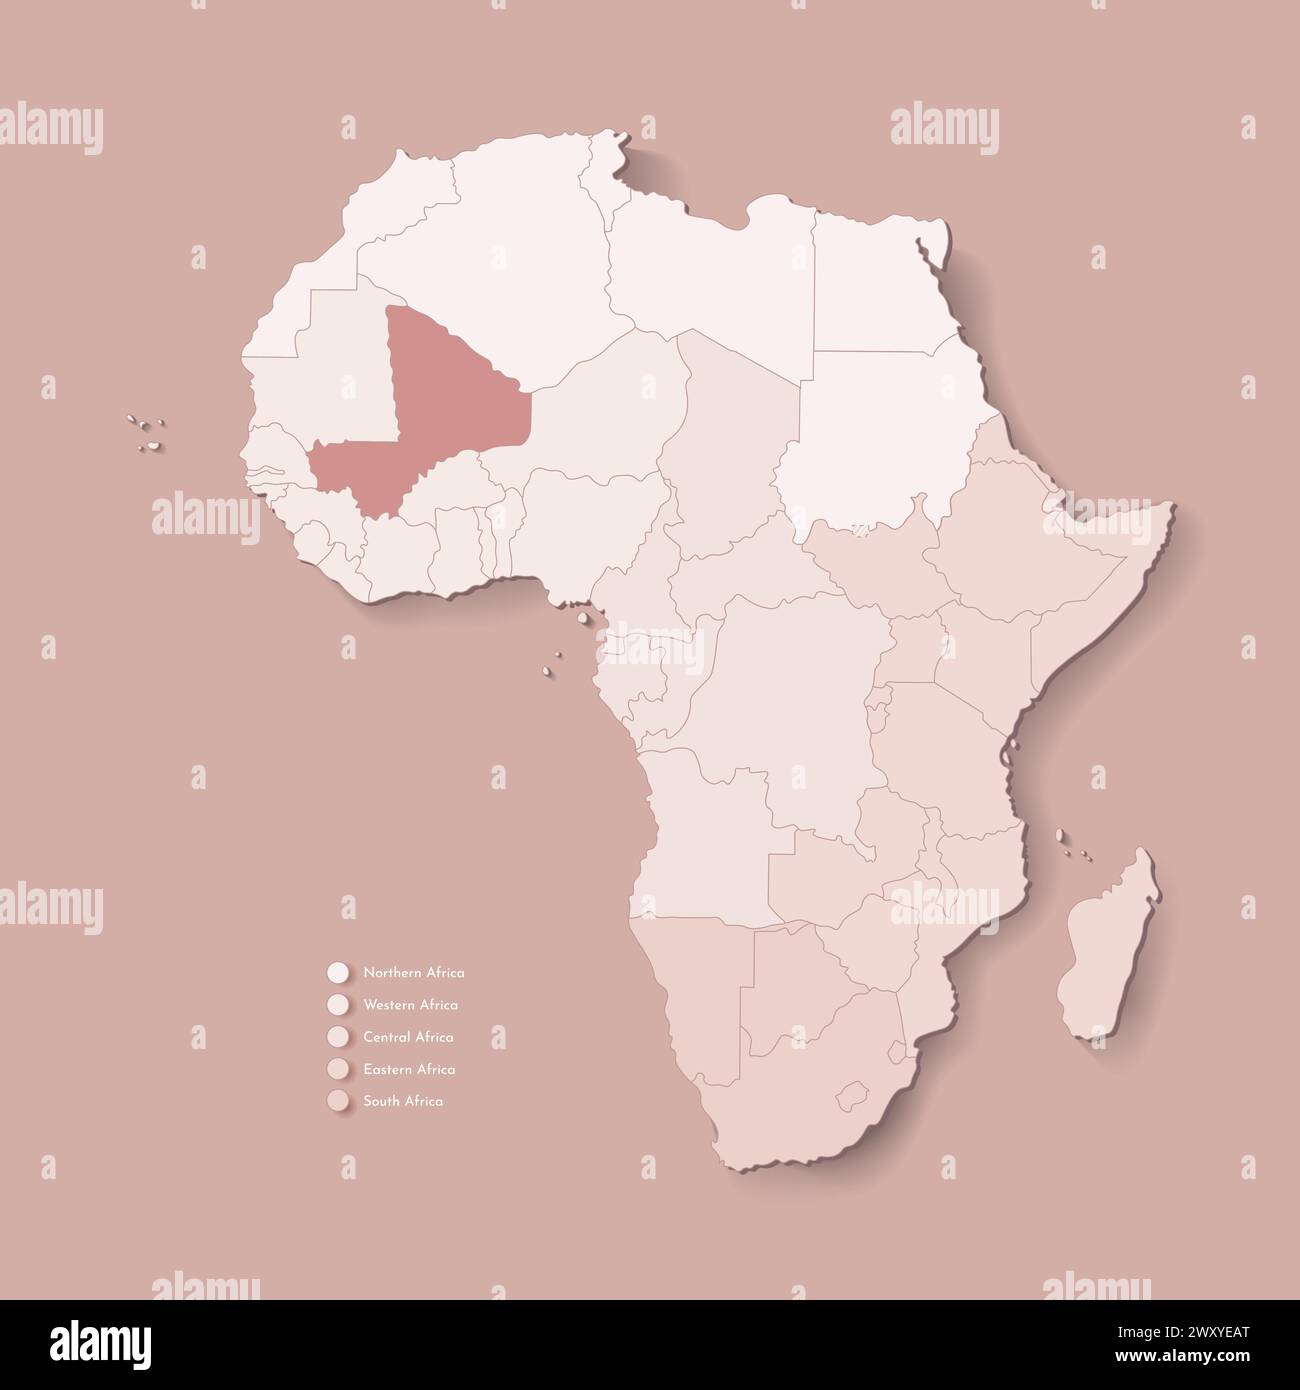 Illustrazione vettoriale con continente africano con confini di tutti gli stati e paese marcato Mali. Mappa politica di colore marrone con occidentale, sud ed e. Illustrazione Vettoriale